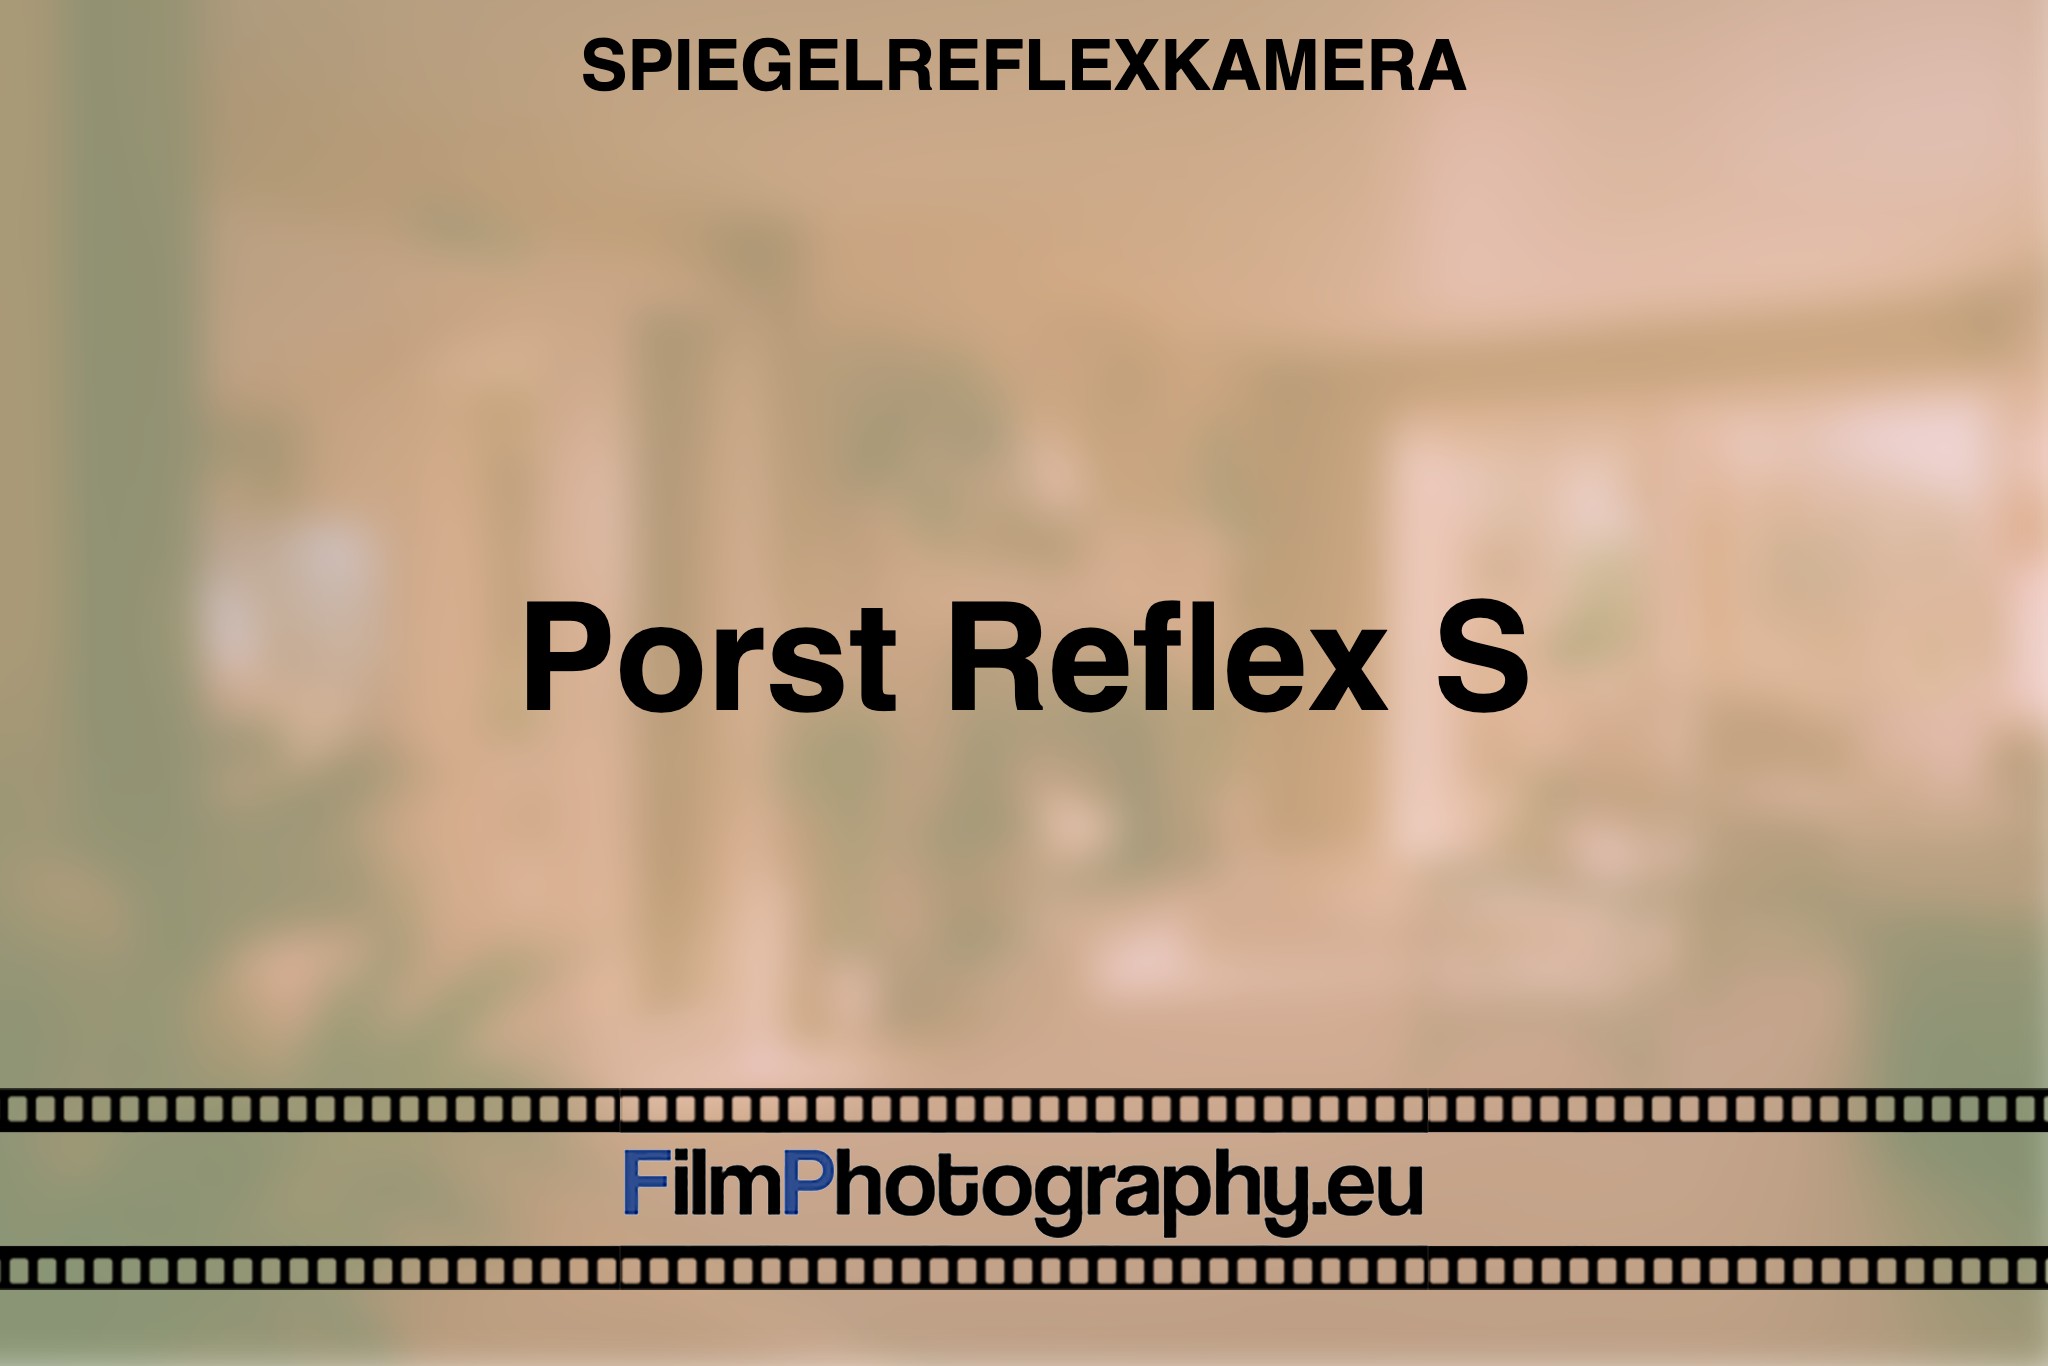 porst-reflex-s-spiegelreflexkamera-bnv